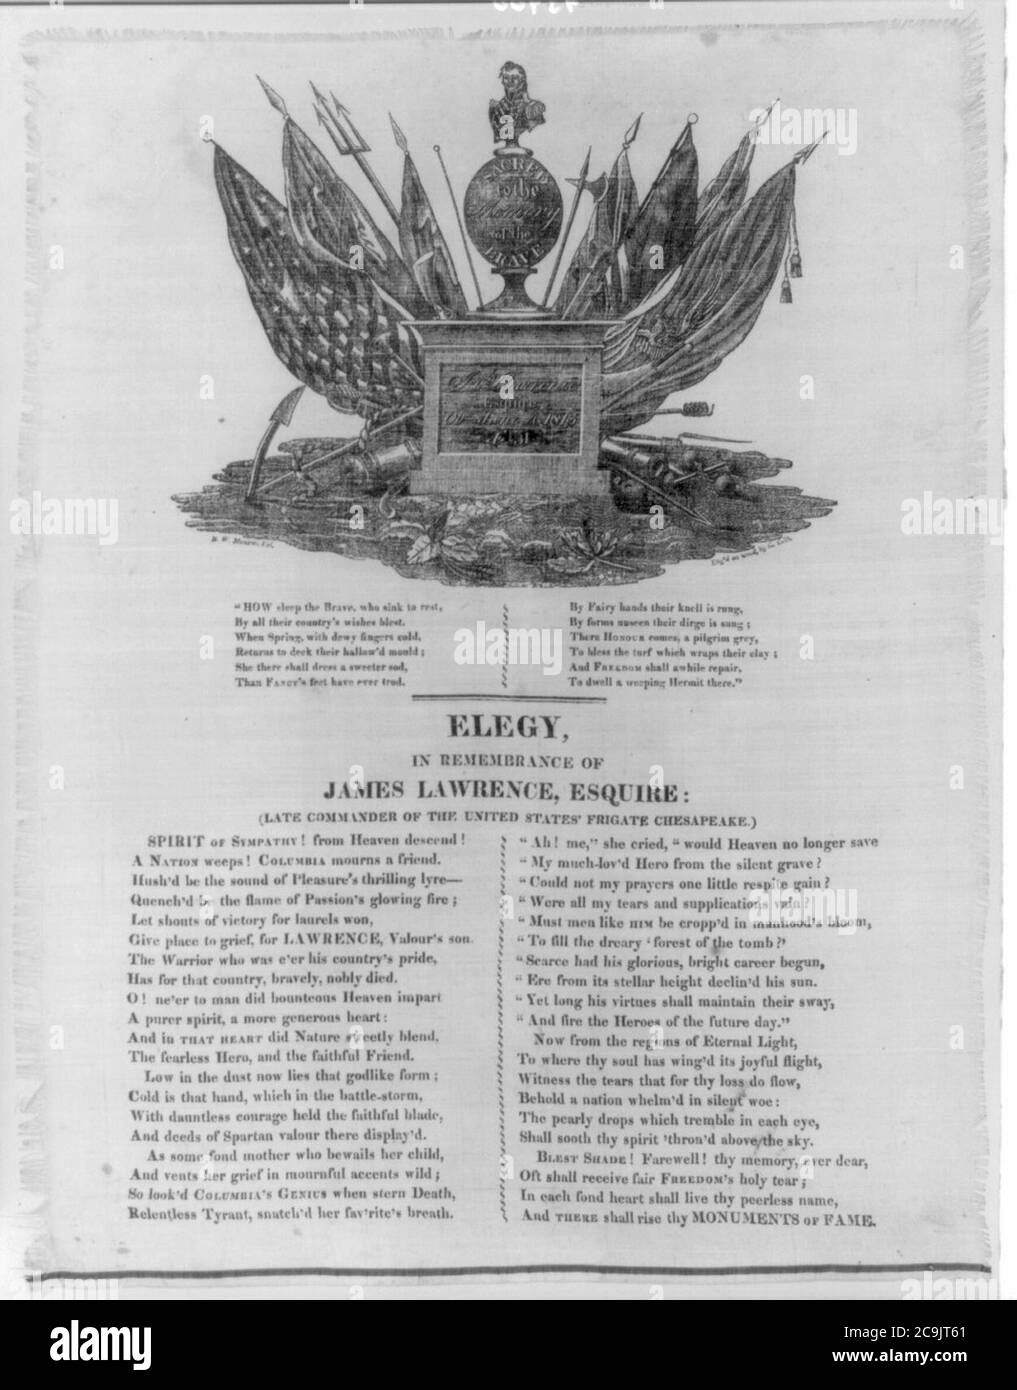 James Lawrence, 1781-1813-Memorial. Elegy en souvenir de James Lawrence, Esquire- (ancien commandant de la frégate des États-Unis Chesapeake) Banque D'Images